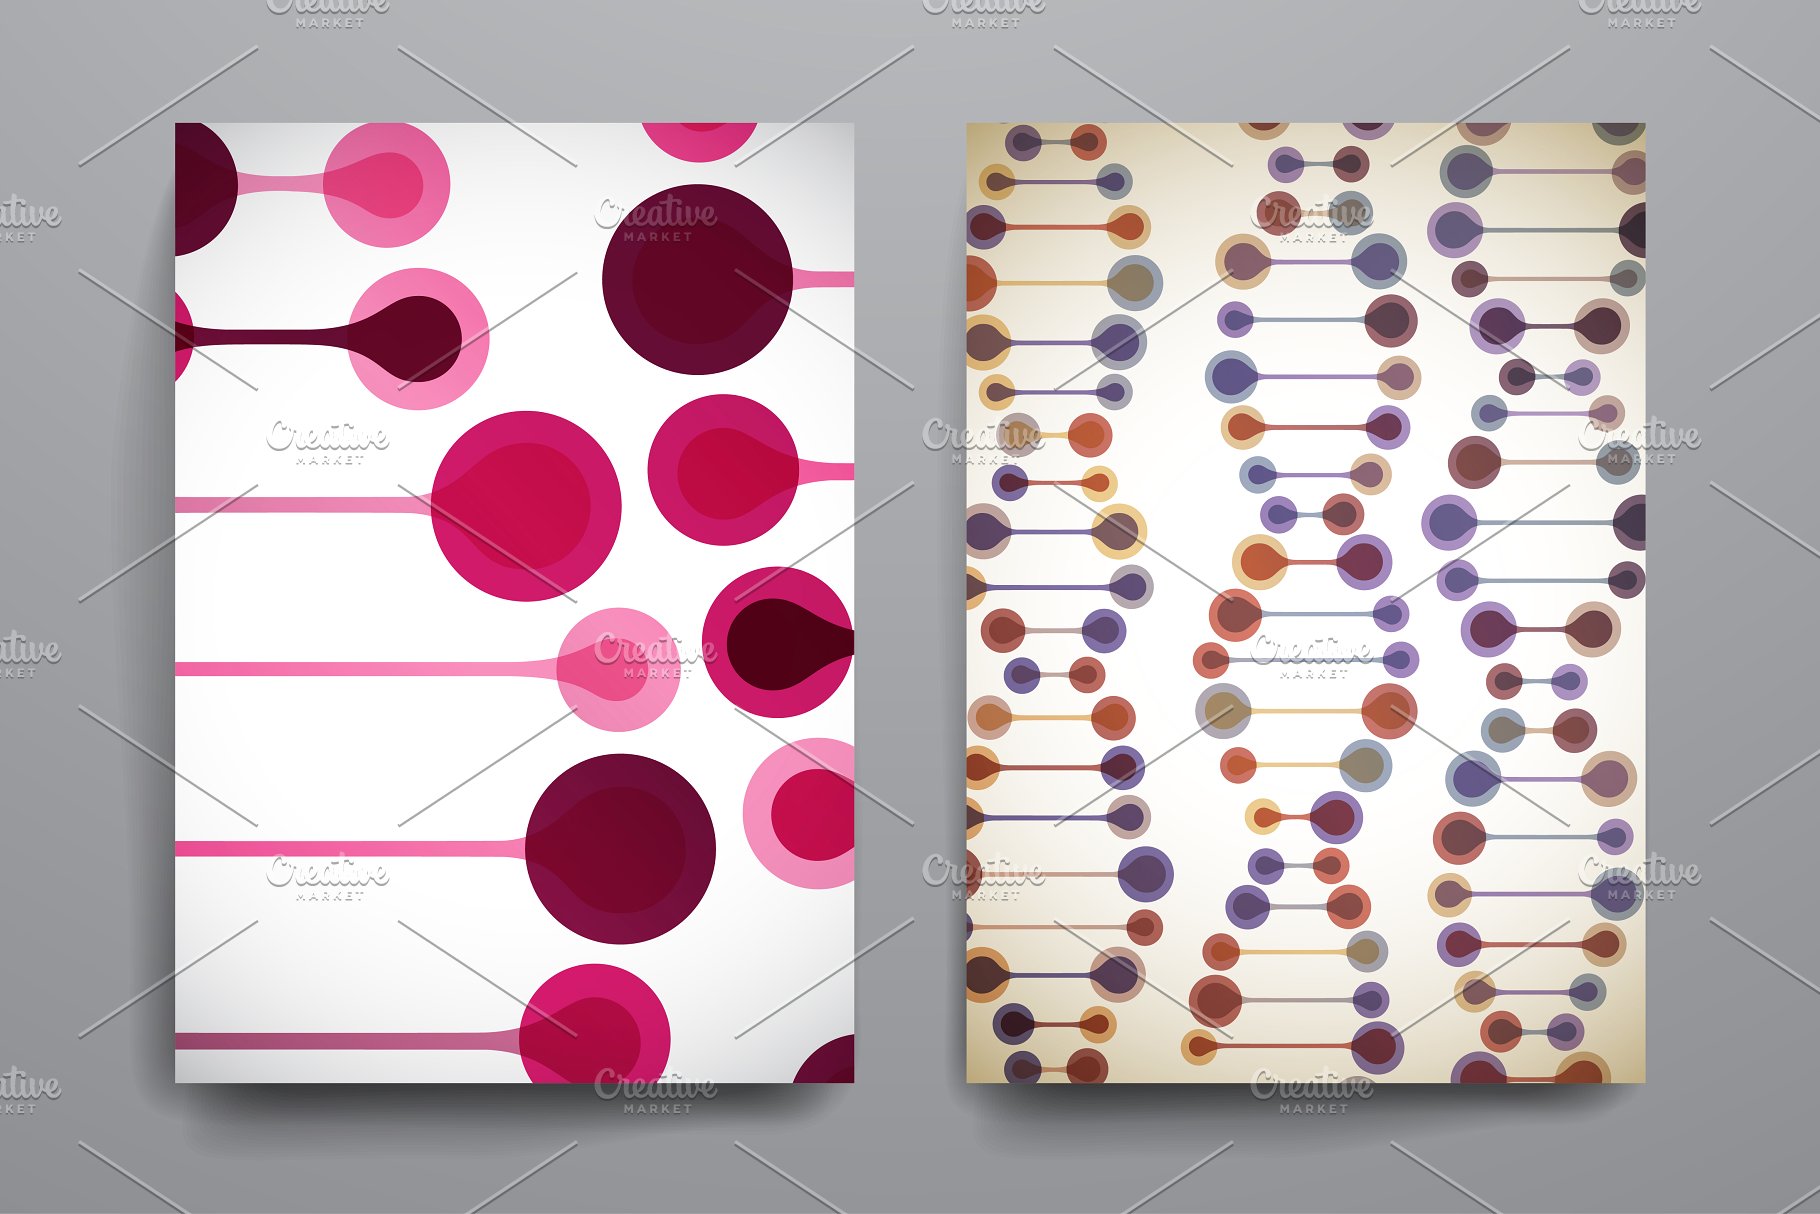 漂亮的DNA链条图形背景小册子模板 Beautiful brochures in DNA style.插图(3)